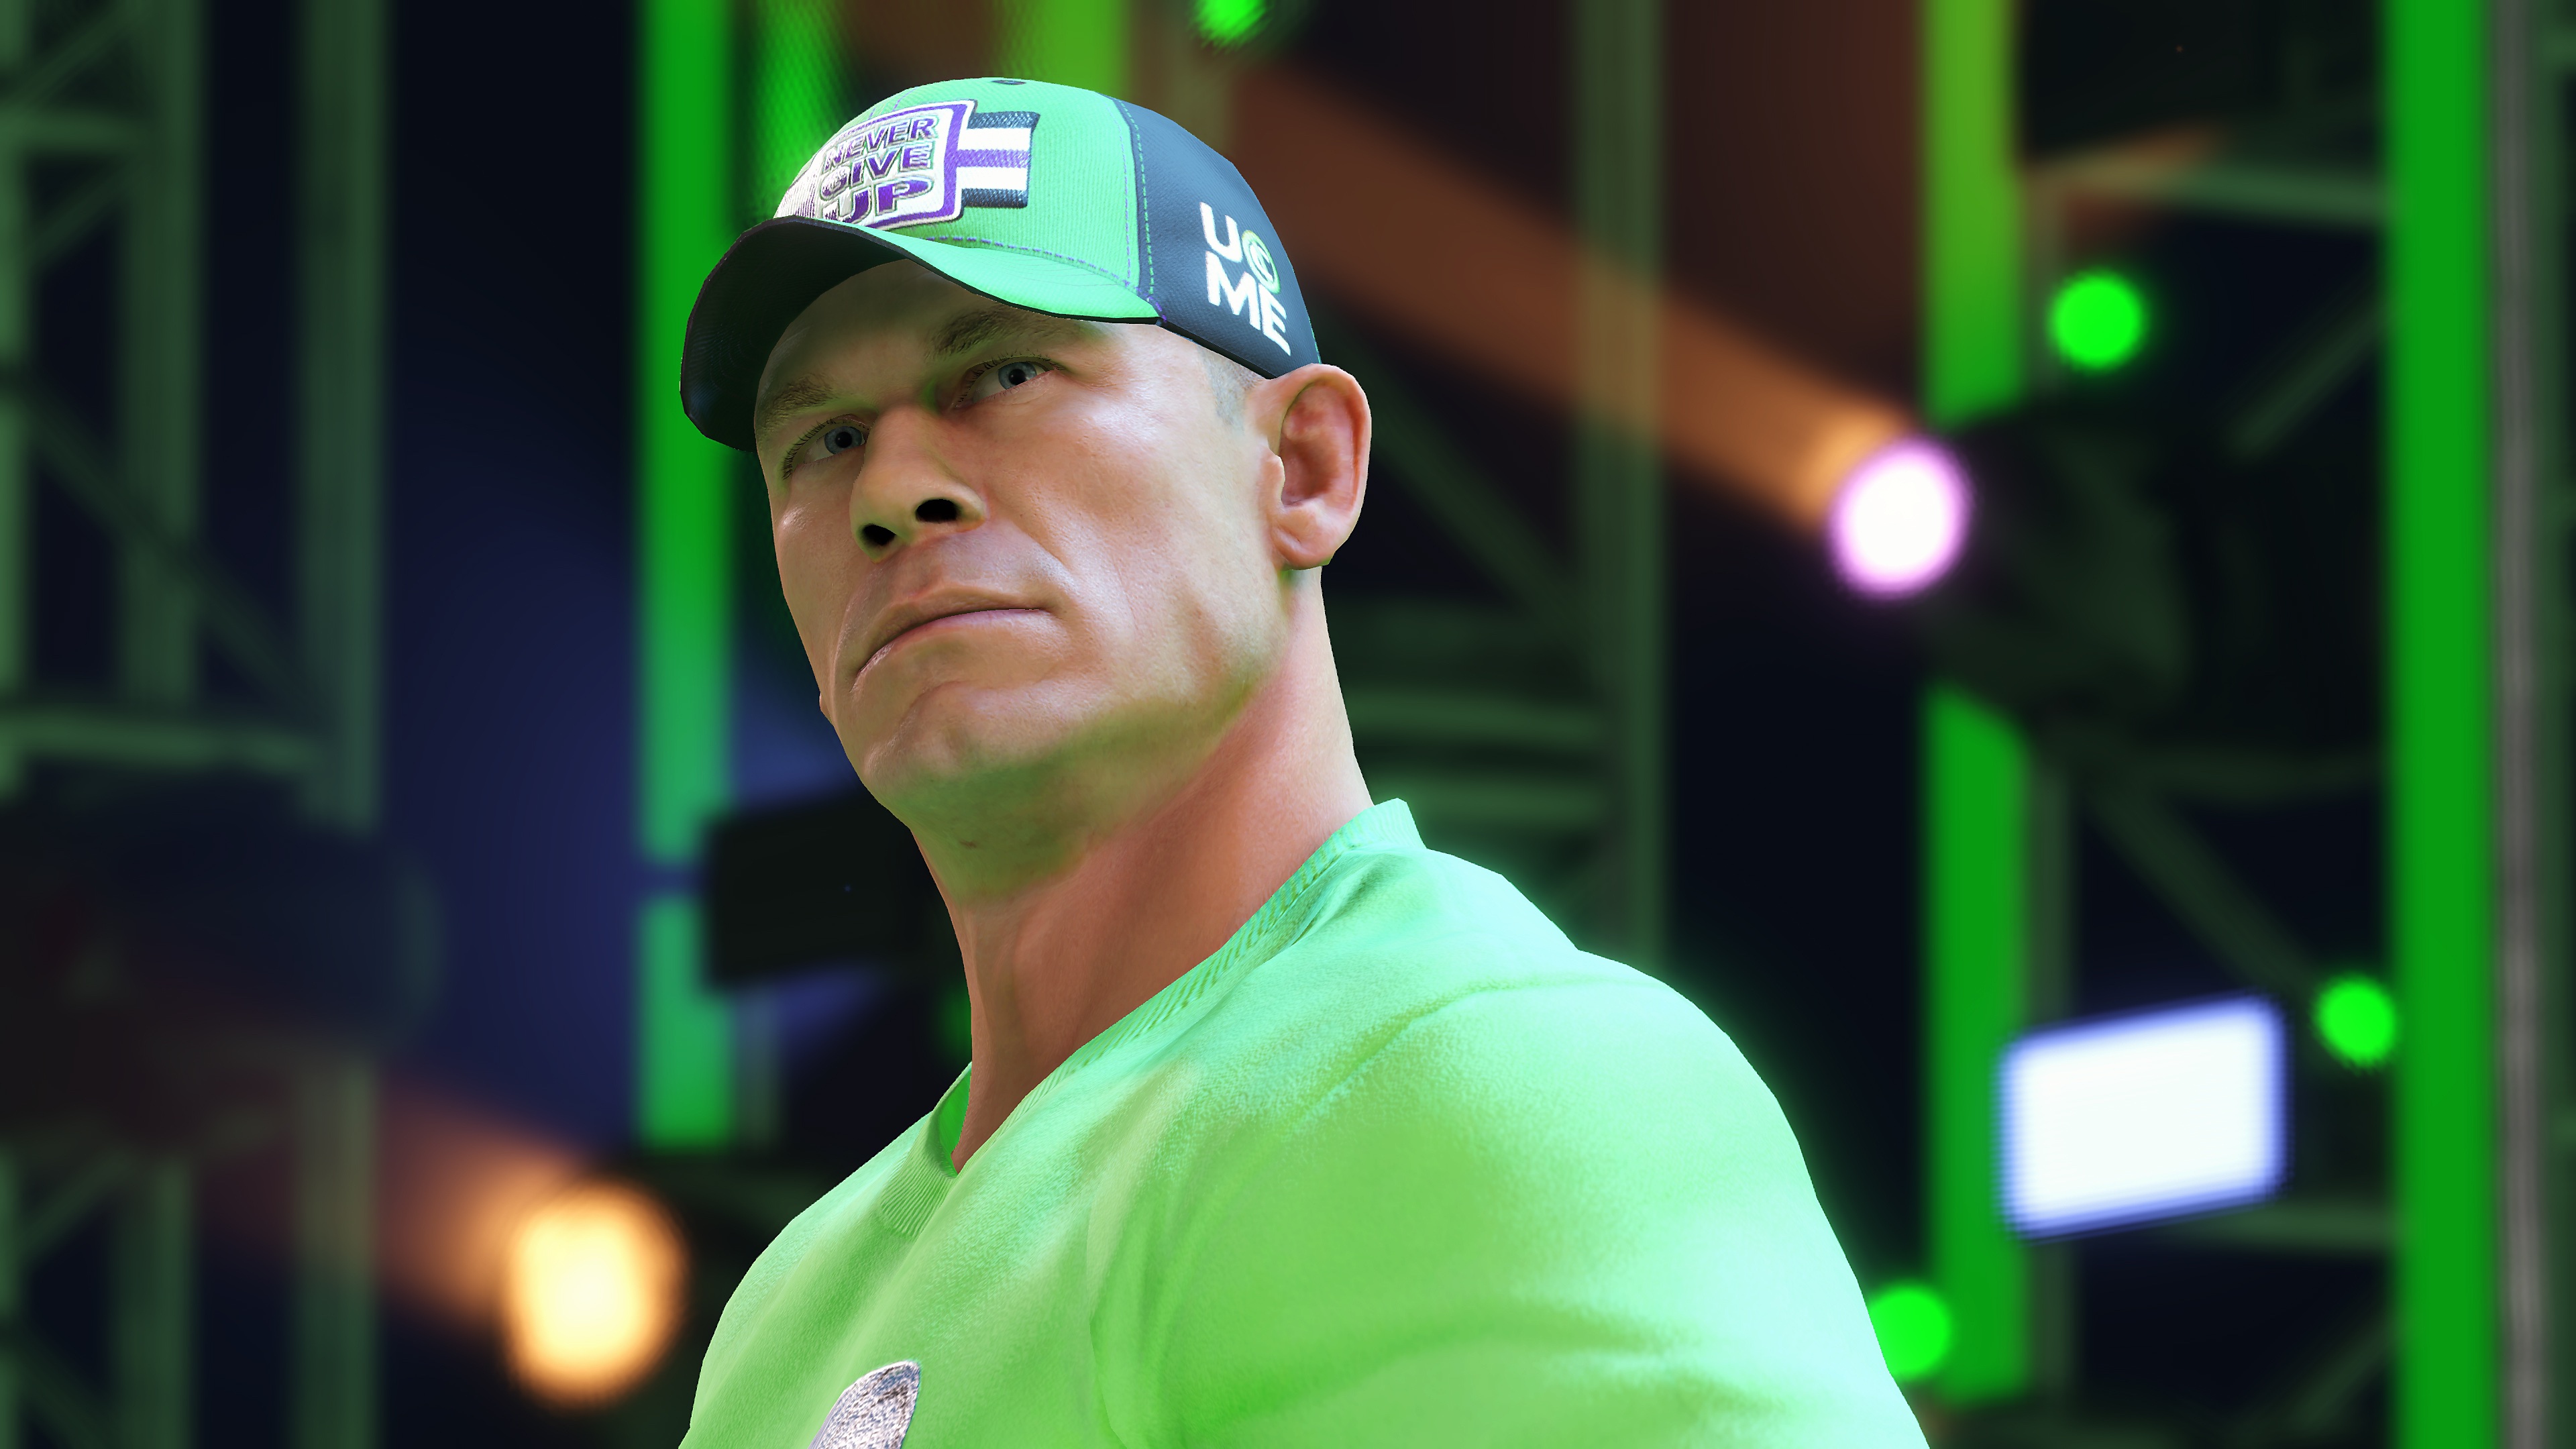 WWE 2K22 - Capture d'écran